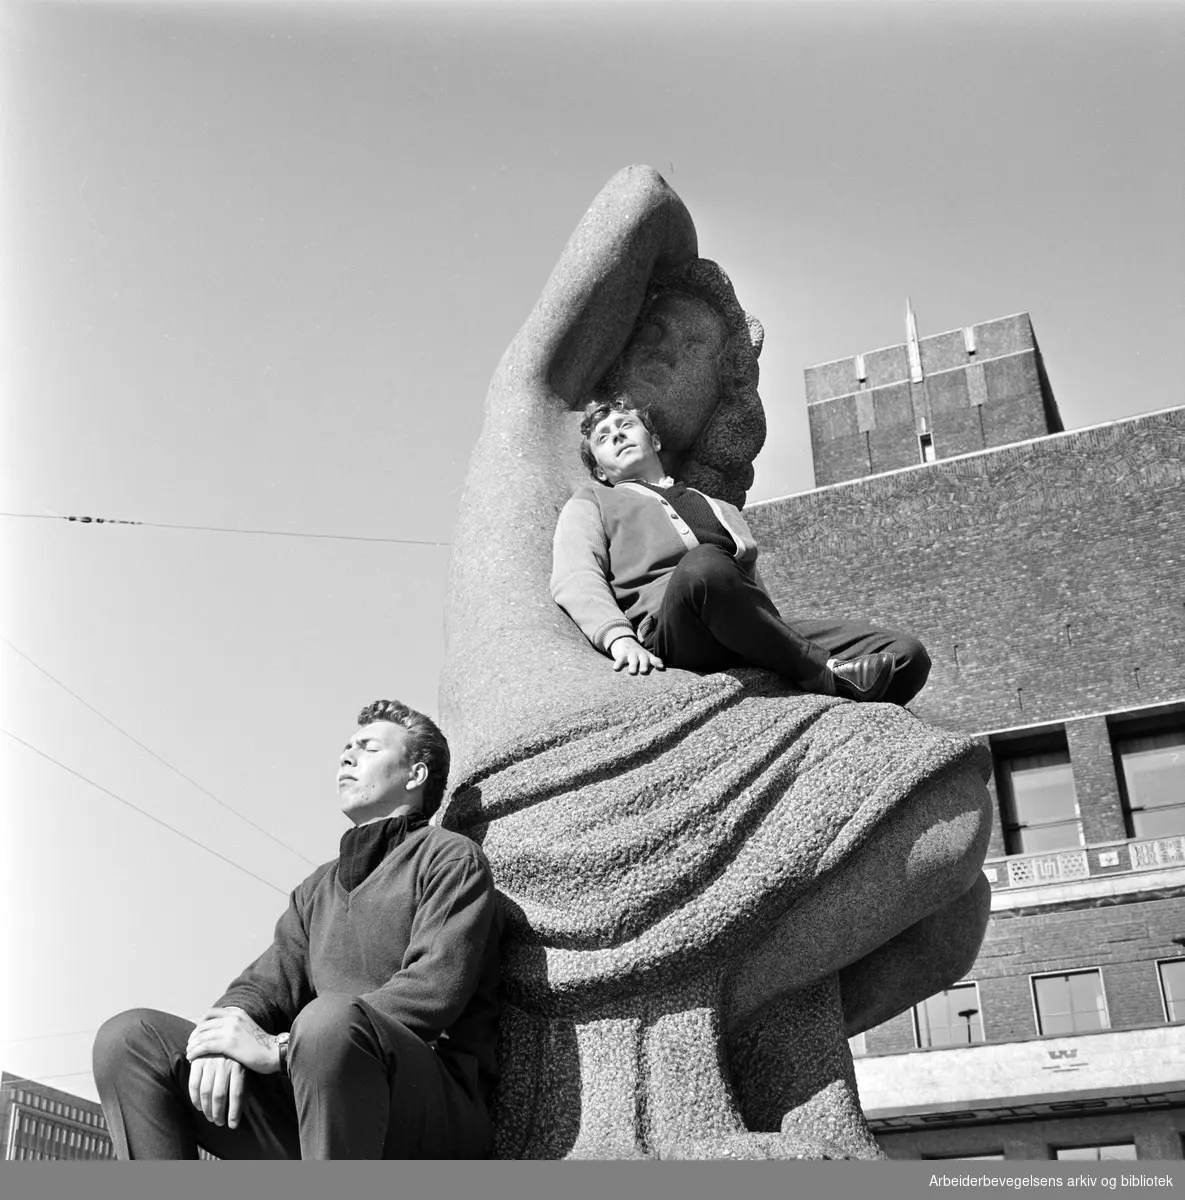 Vårstemning på Rådhusplassen i Oslo. To menn soler seg på Emil Lies skulptur av sittende kvinne, reist 1954-58. 24. April 1962.